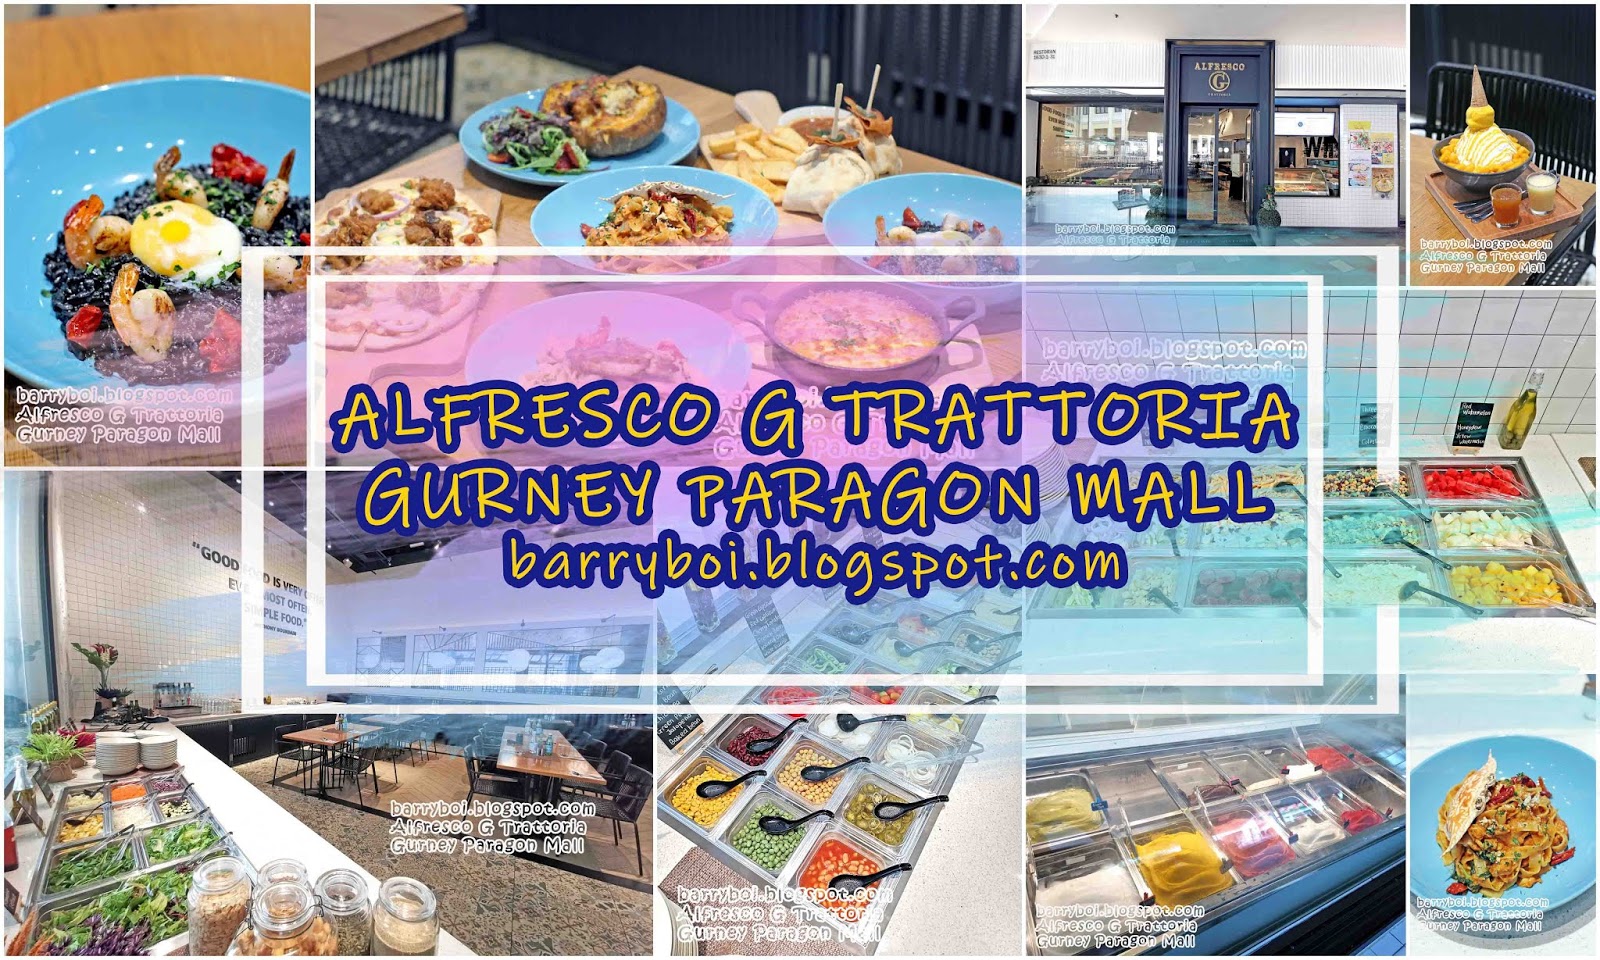 Enjoy Italian Food at Alfresco G Trattoria, Gurney Paragon ...